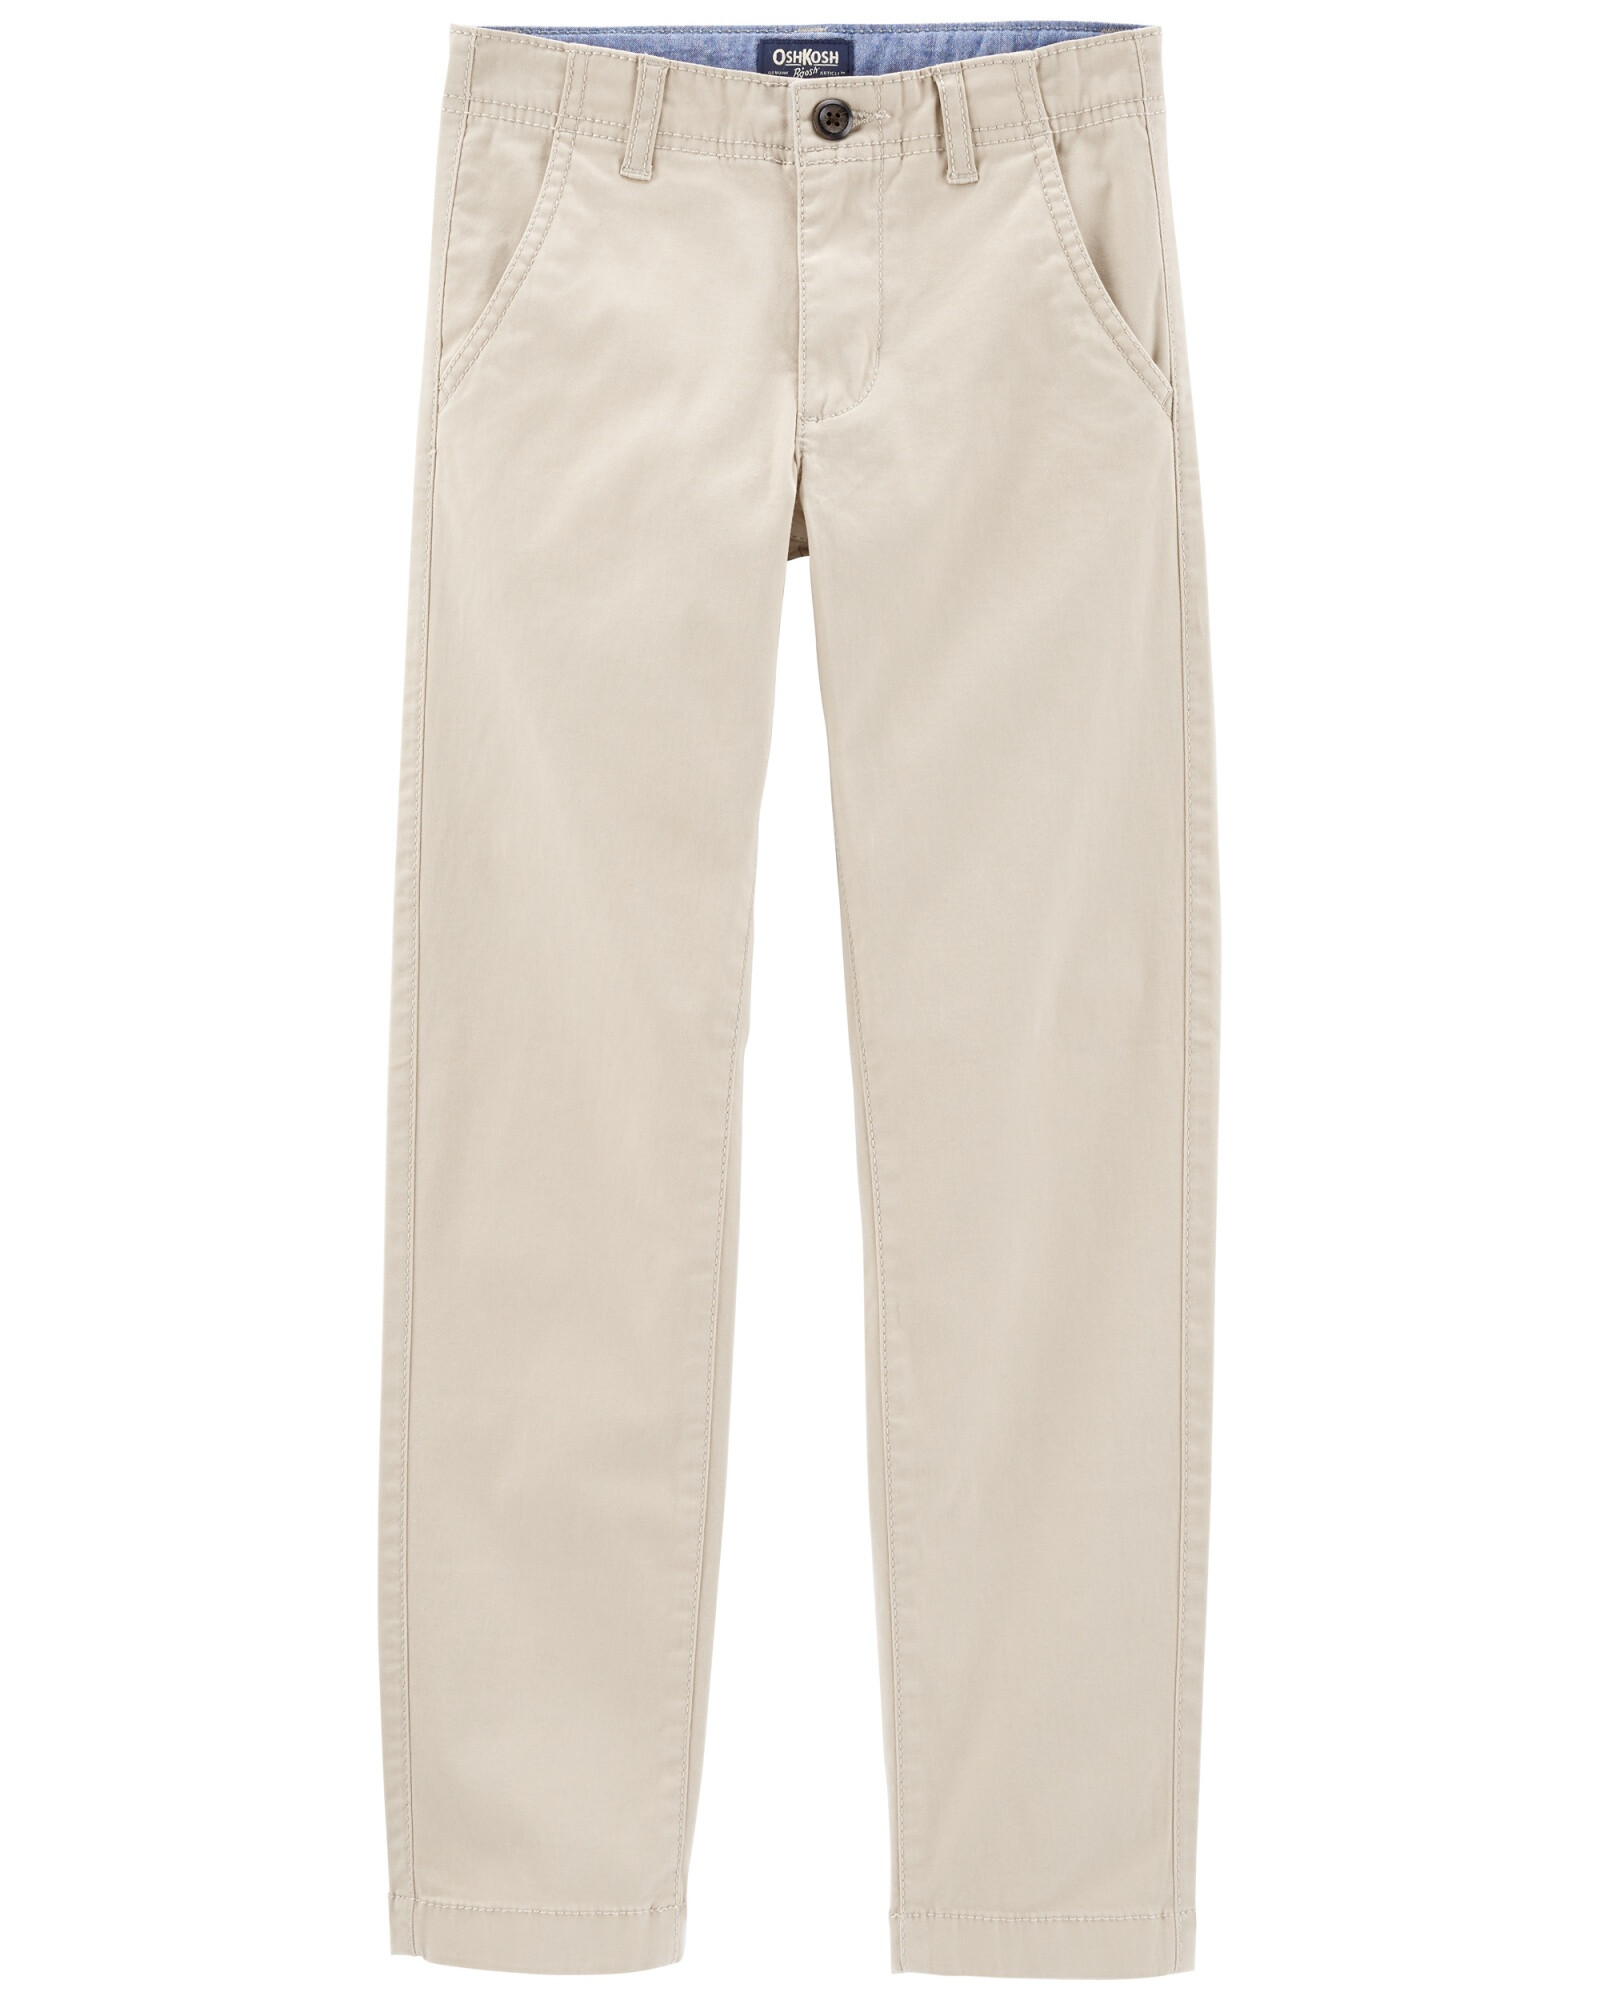 Pantalón de algodón clásico elastizado. Talles 6-14 Sin color